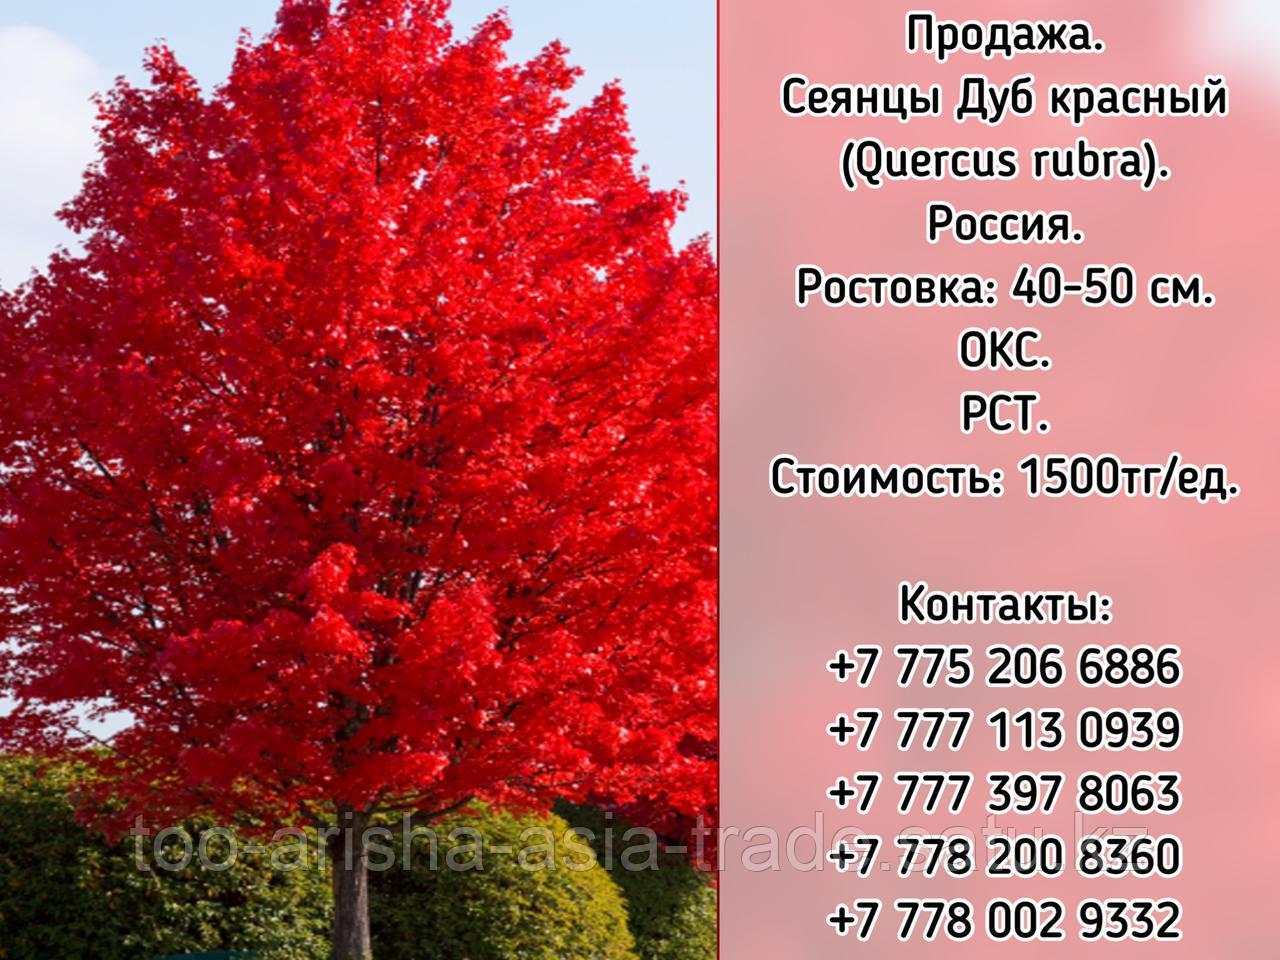 Сеянцы Дуб красный (Quercus rubra) РСТ Россия